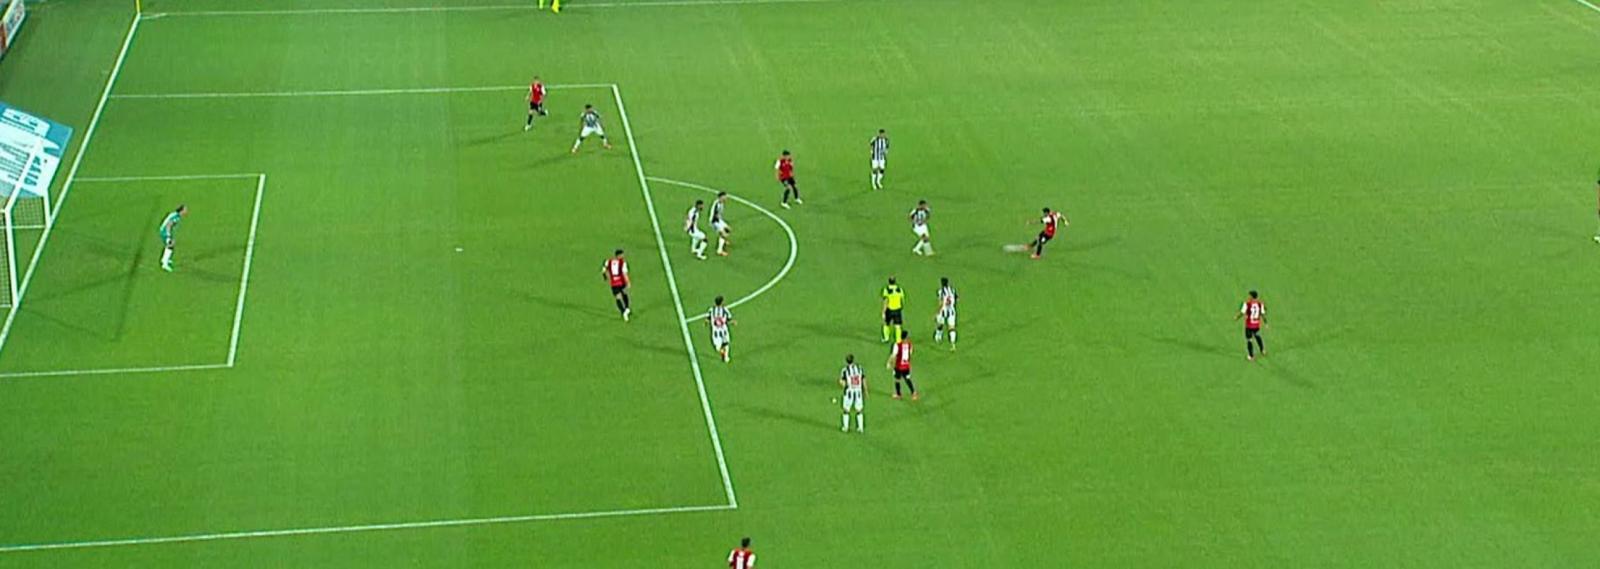 Imagen La posición de Silvio Romero en el gol anulado contra Central Córdoba